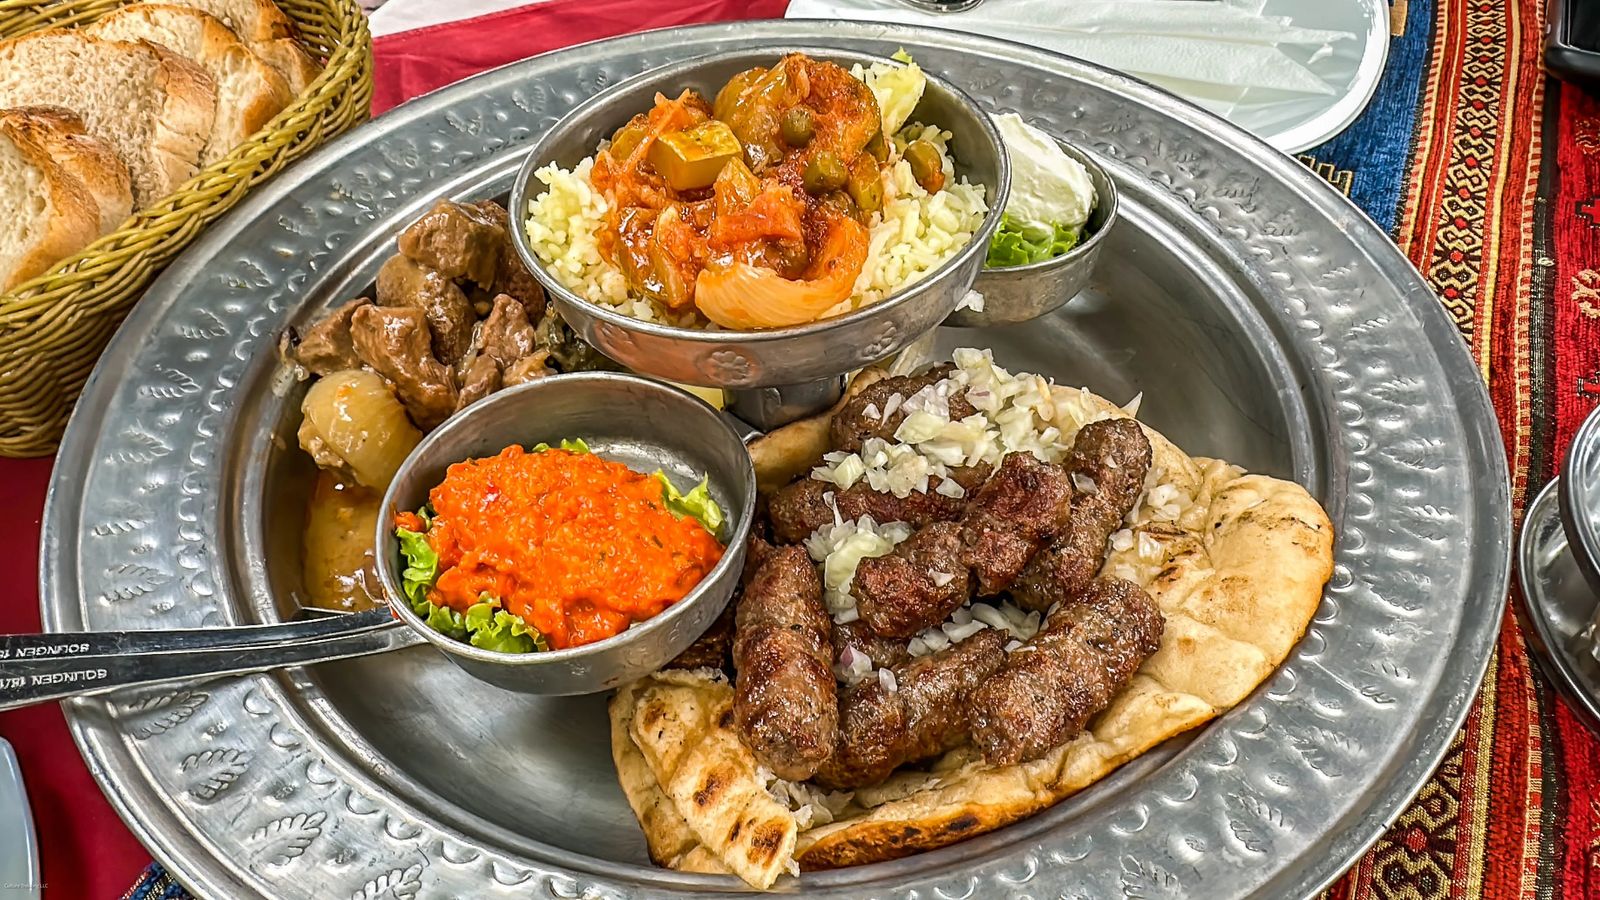 Food in Mostar